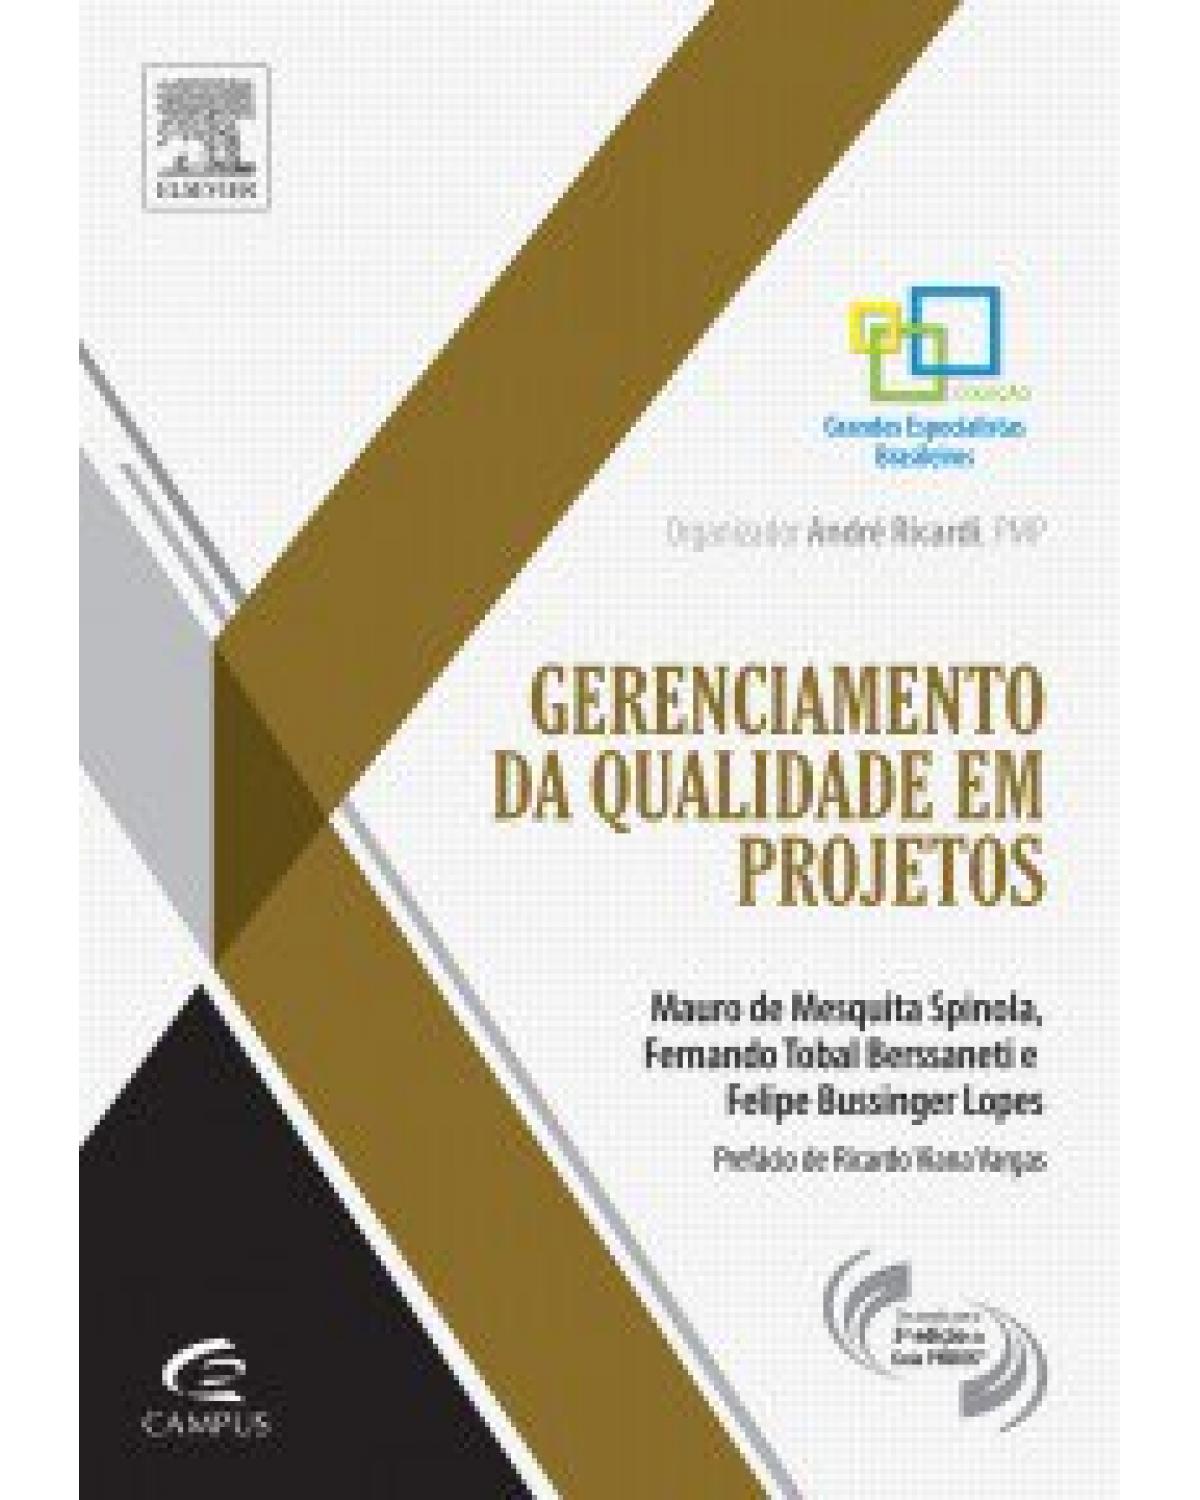 Gerenciamento de qualidade em projetos - 1ª Edição | 2013